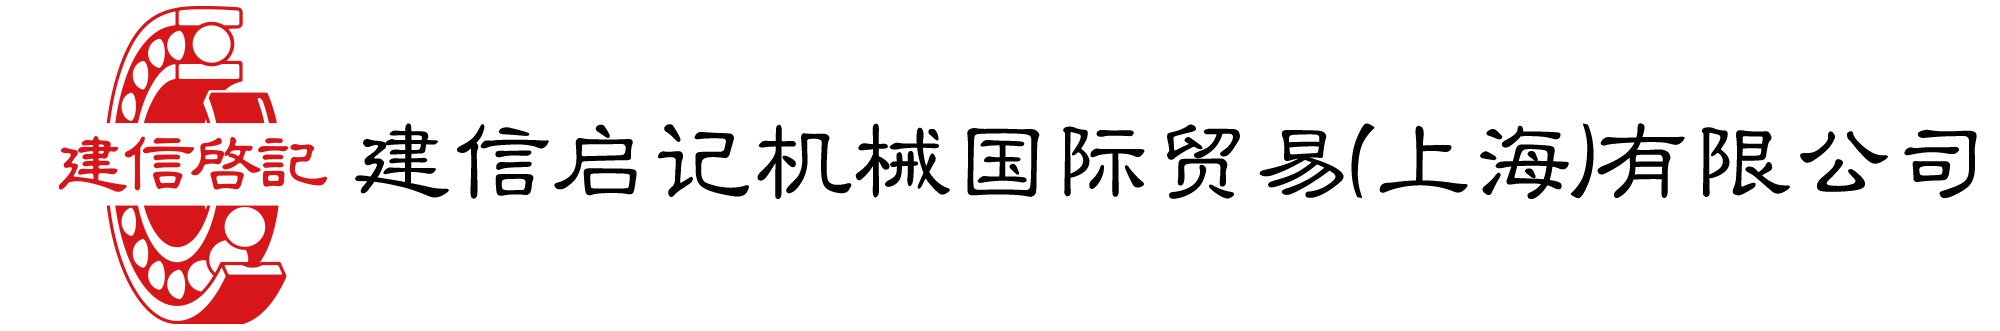 建信启记机械国际贸易(上海)有限公司